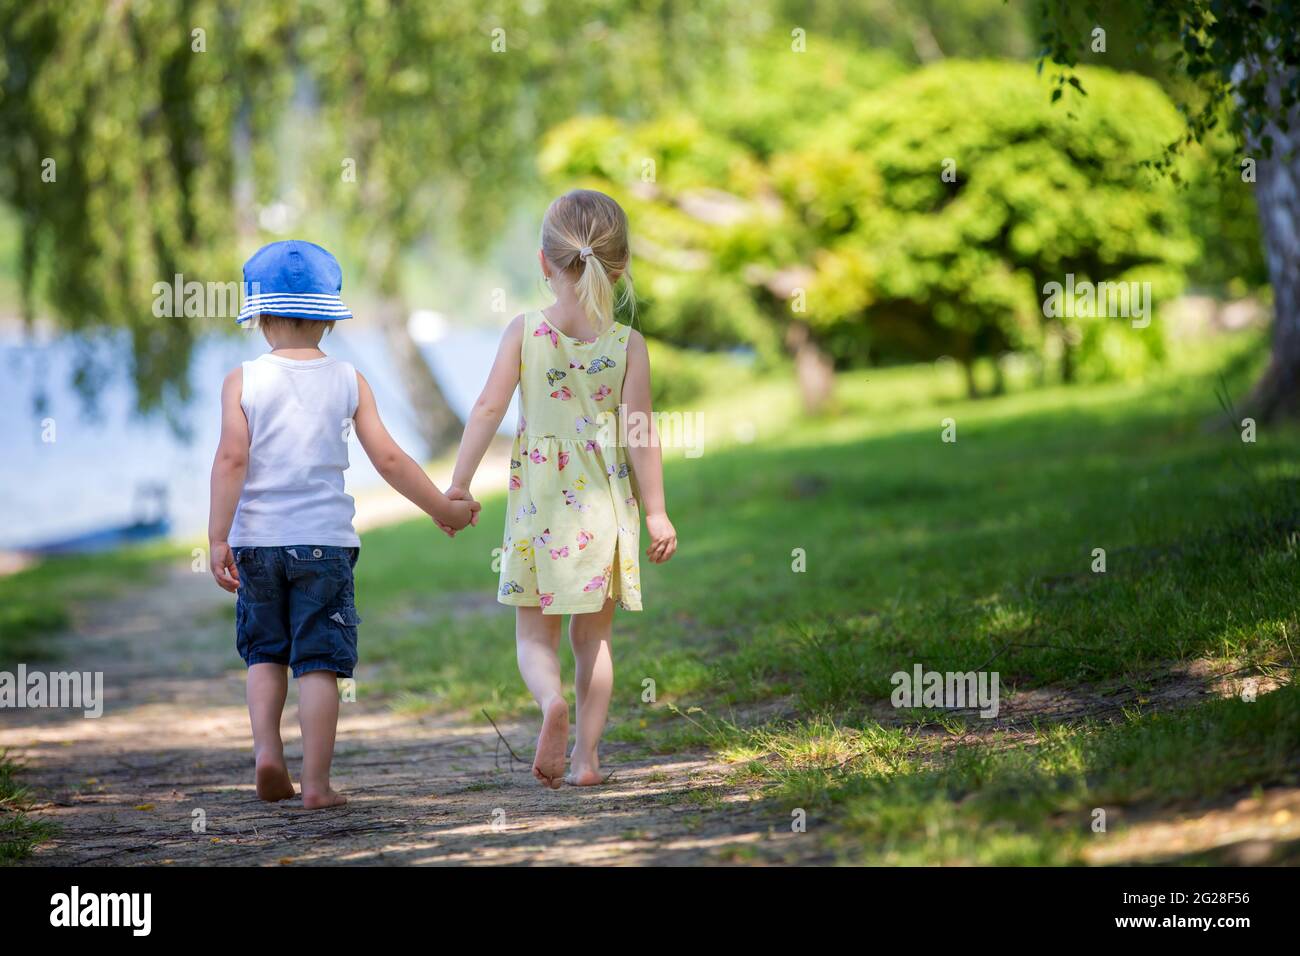 Bambini piccoli, camminando insieme a mano in mano su un piccolo sentiero accanto ad un lago con barche Foto Stock